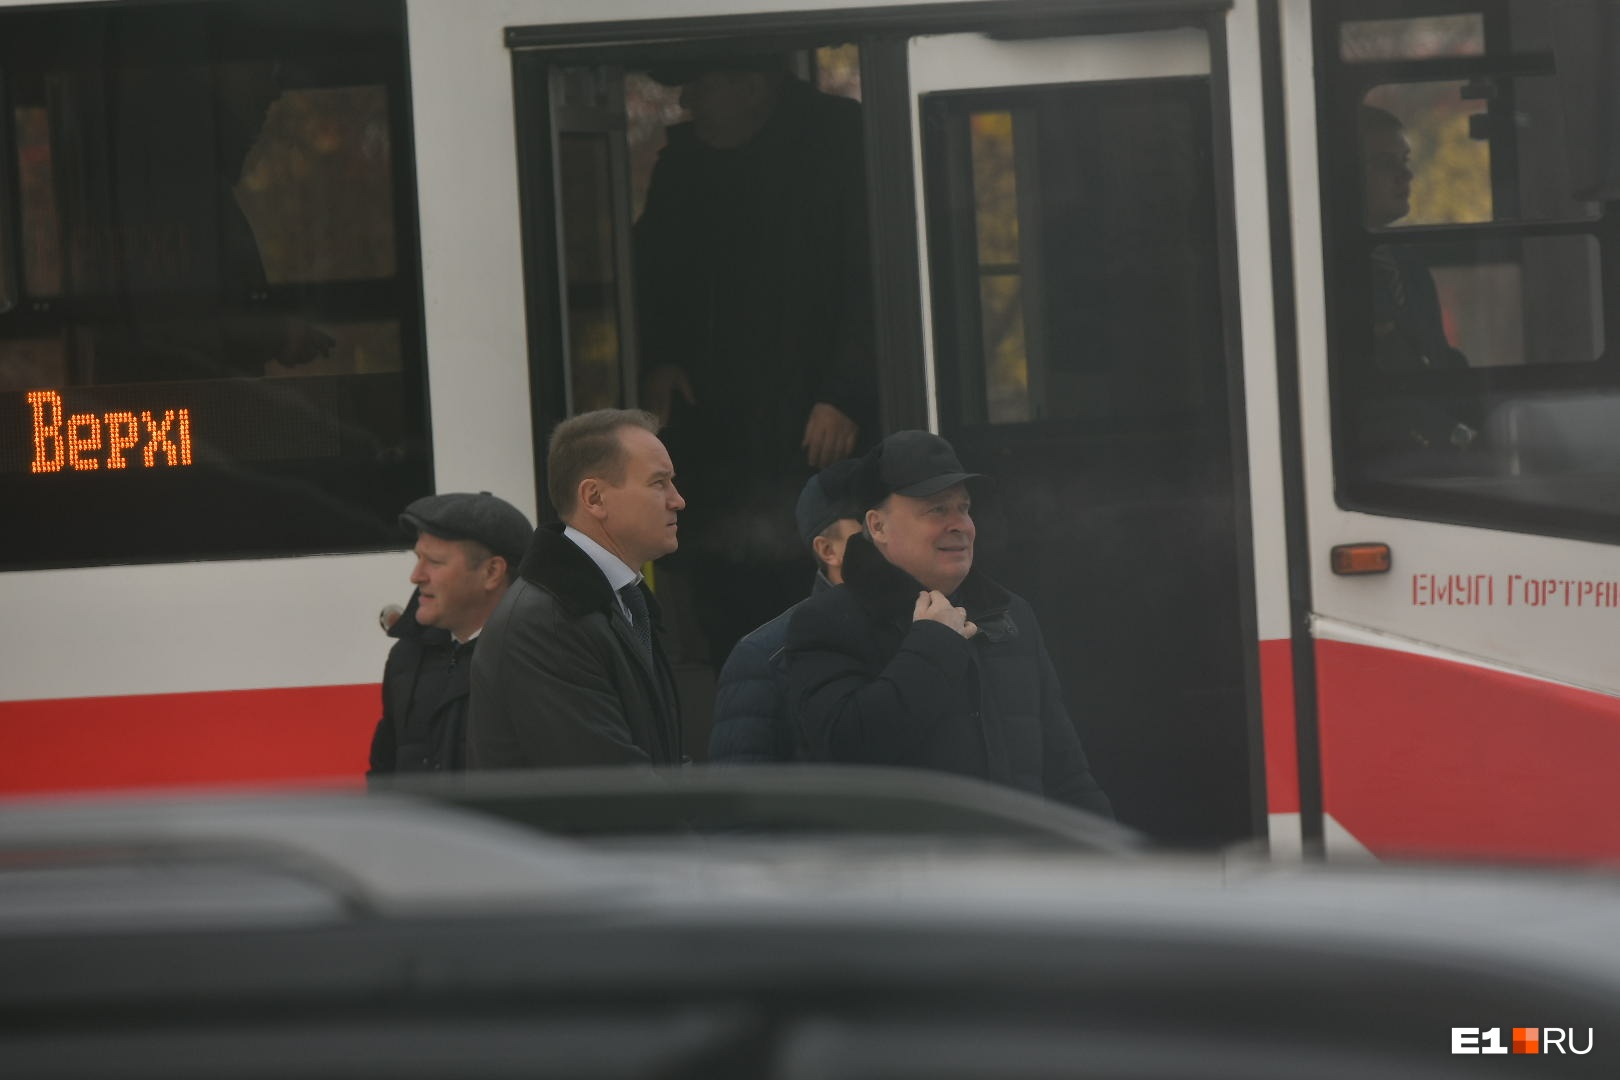 Тронулись! Трамвай из Екатеринбурга в Верхнюю Пышму повез первых ВИП-пассажиров